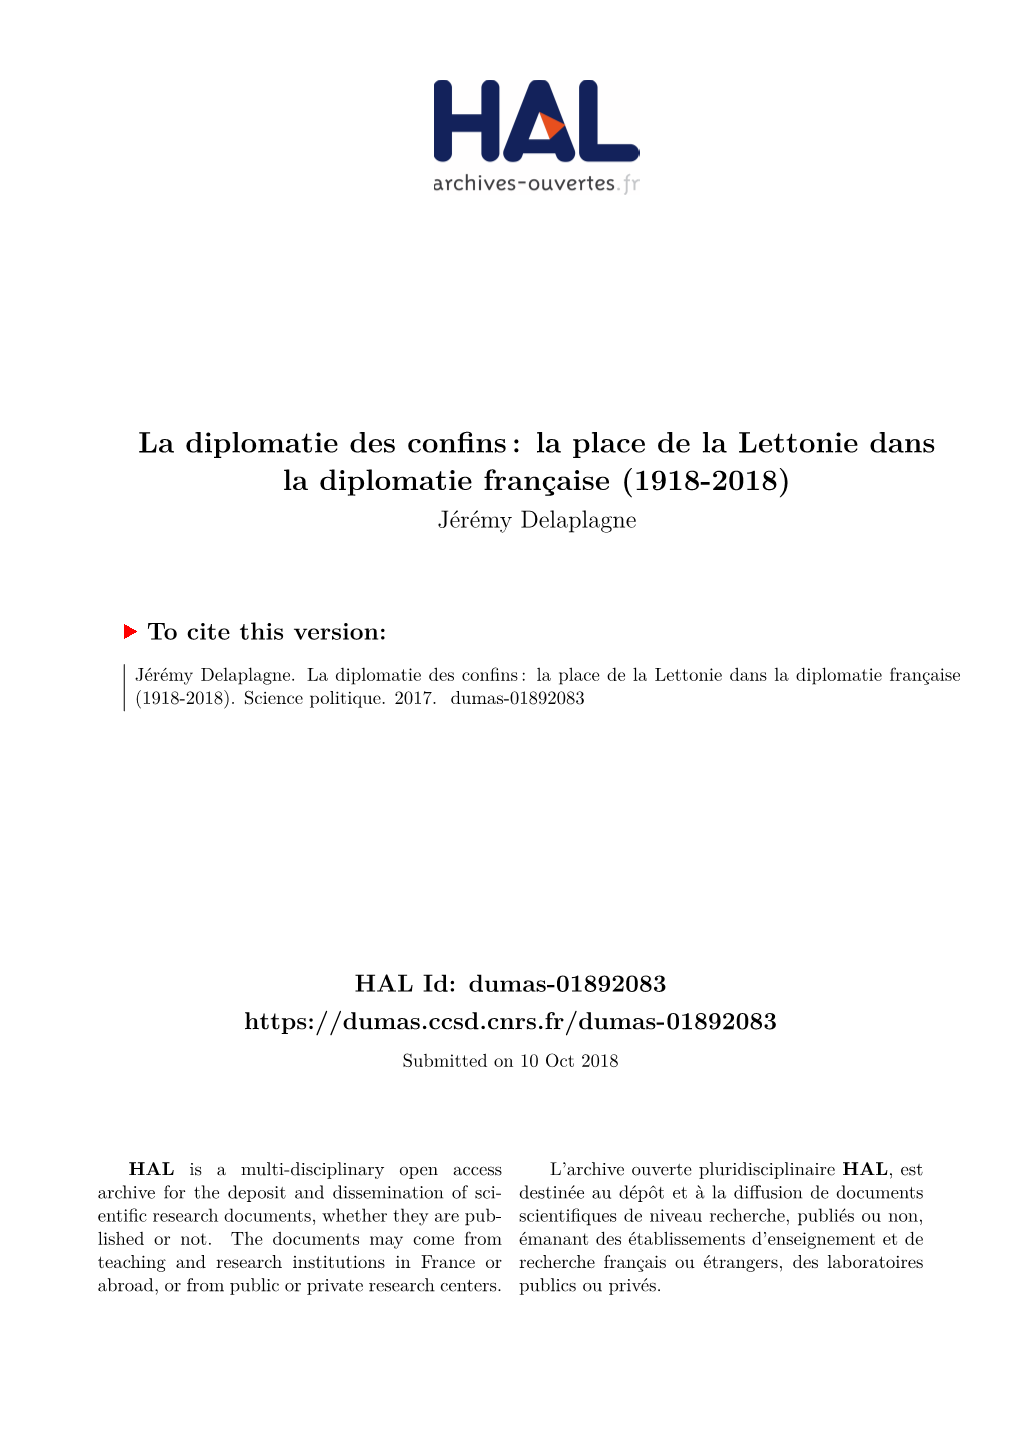 La Place De La Lettonie Dans La Diplomatie Française (1918-2018) Jérémy Delaplagne